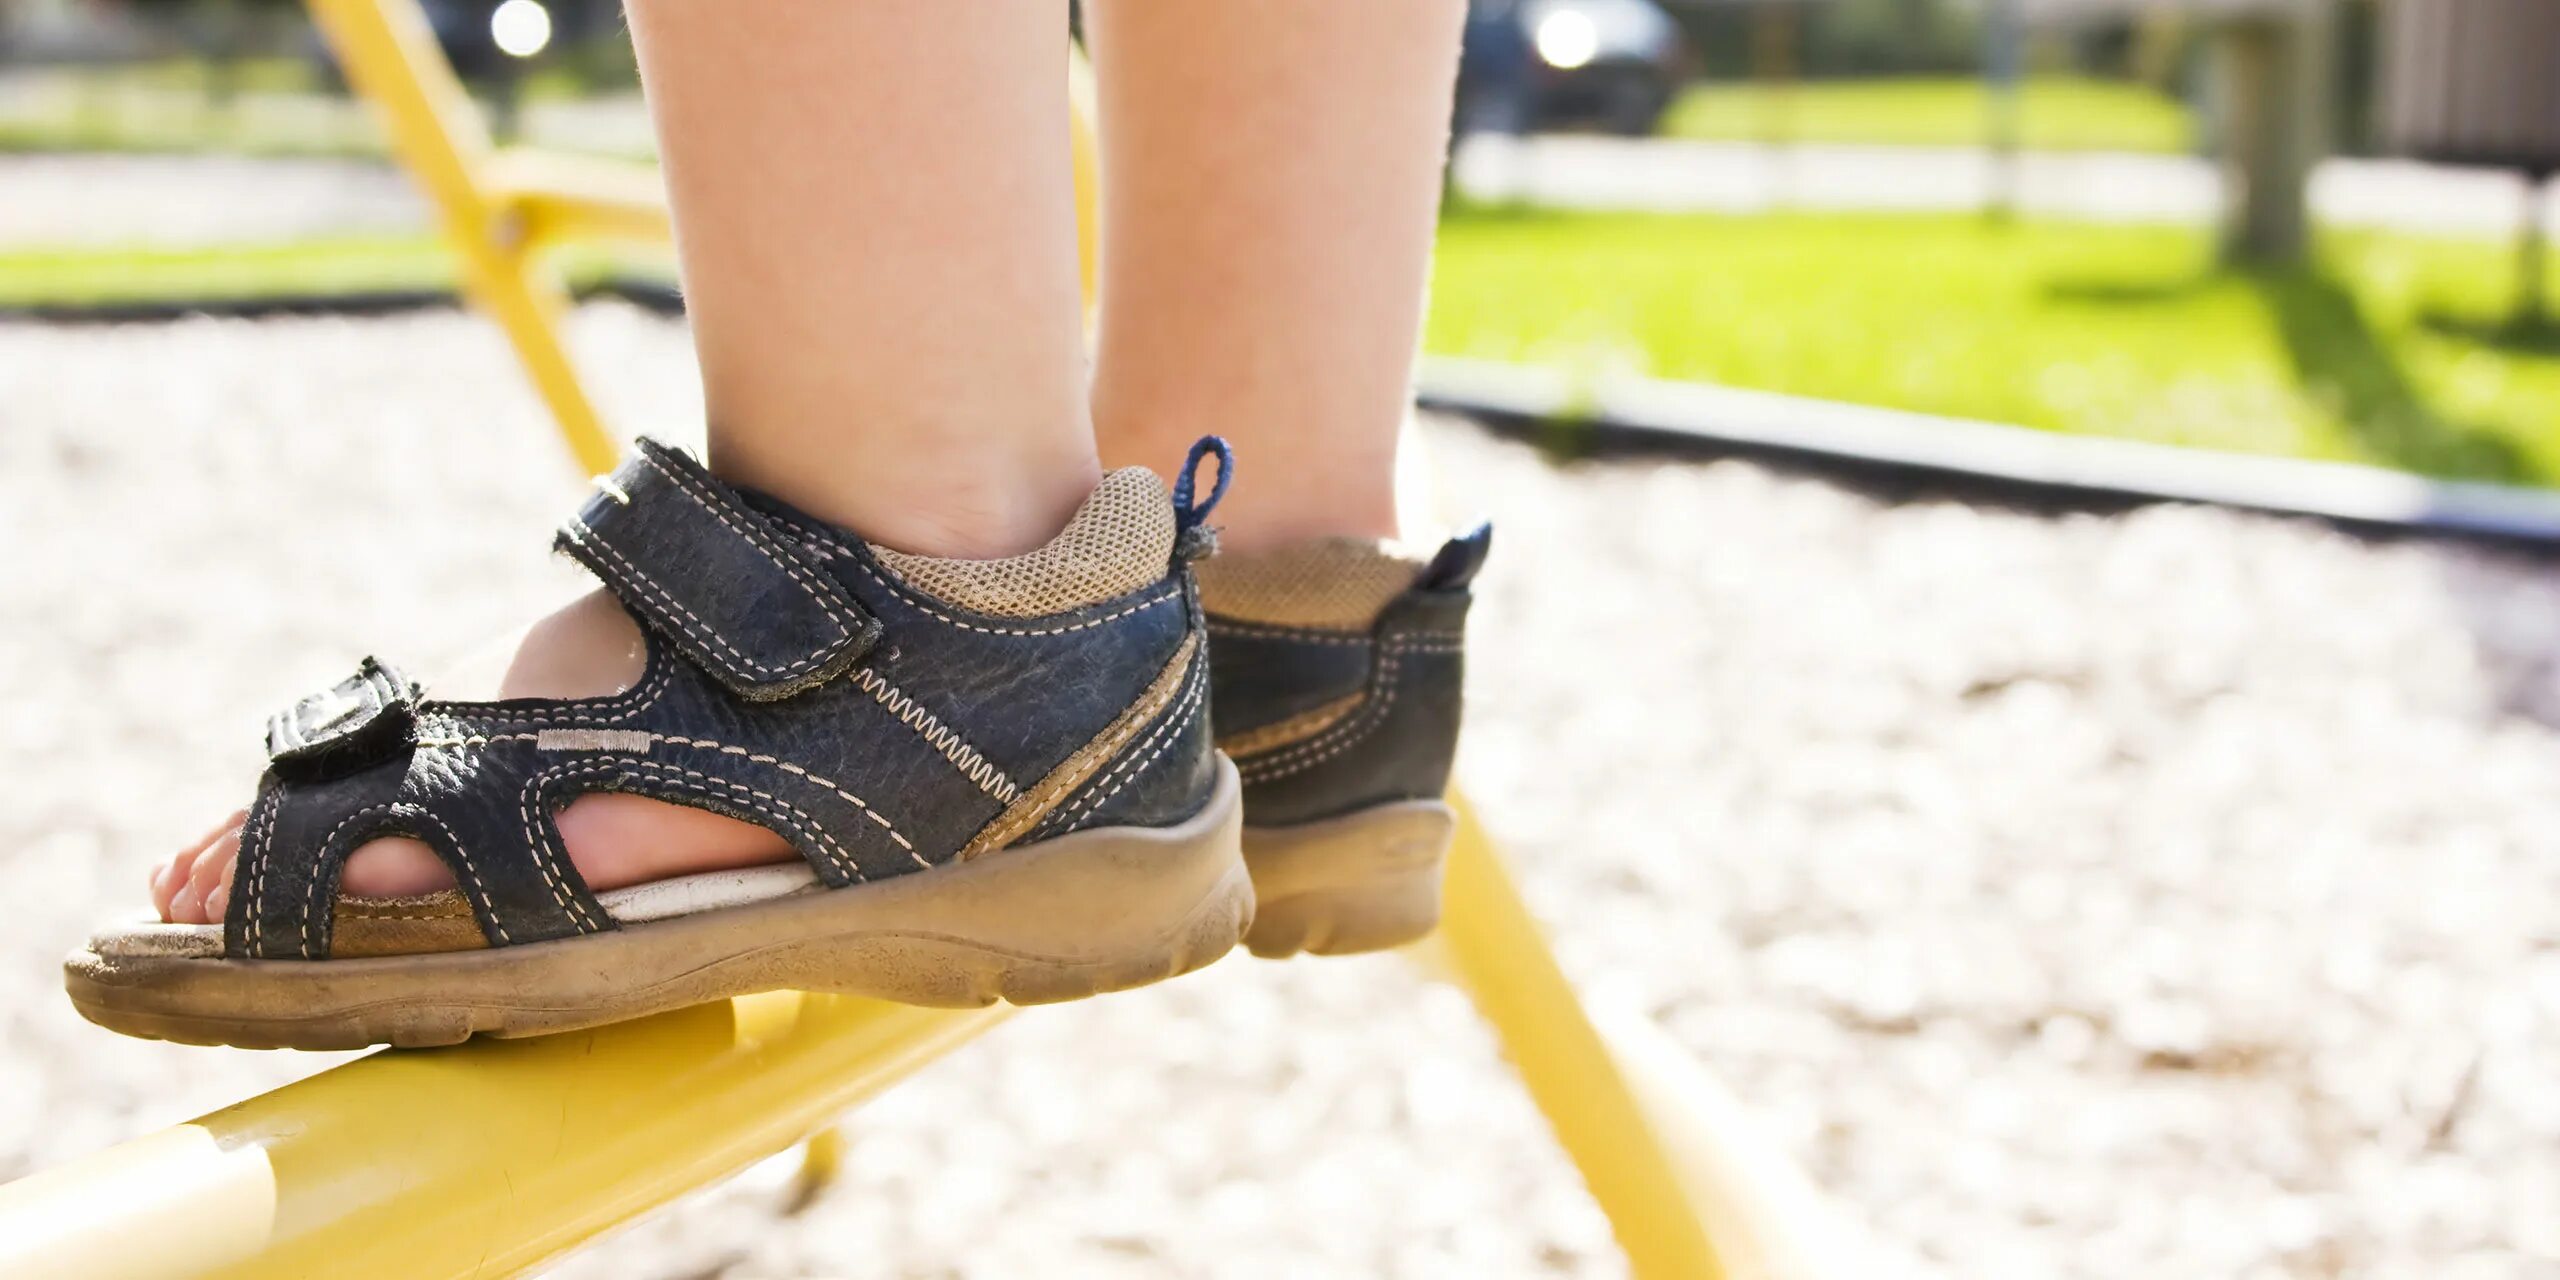 Спортивные босоножки на ноге у ребенка. Сандалии на ножке малыша. Девочка в сандаликах гуляет. Детские ноги в Сланцах.